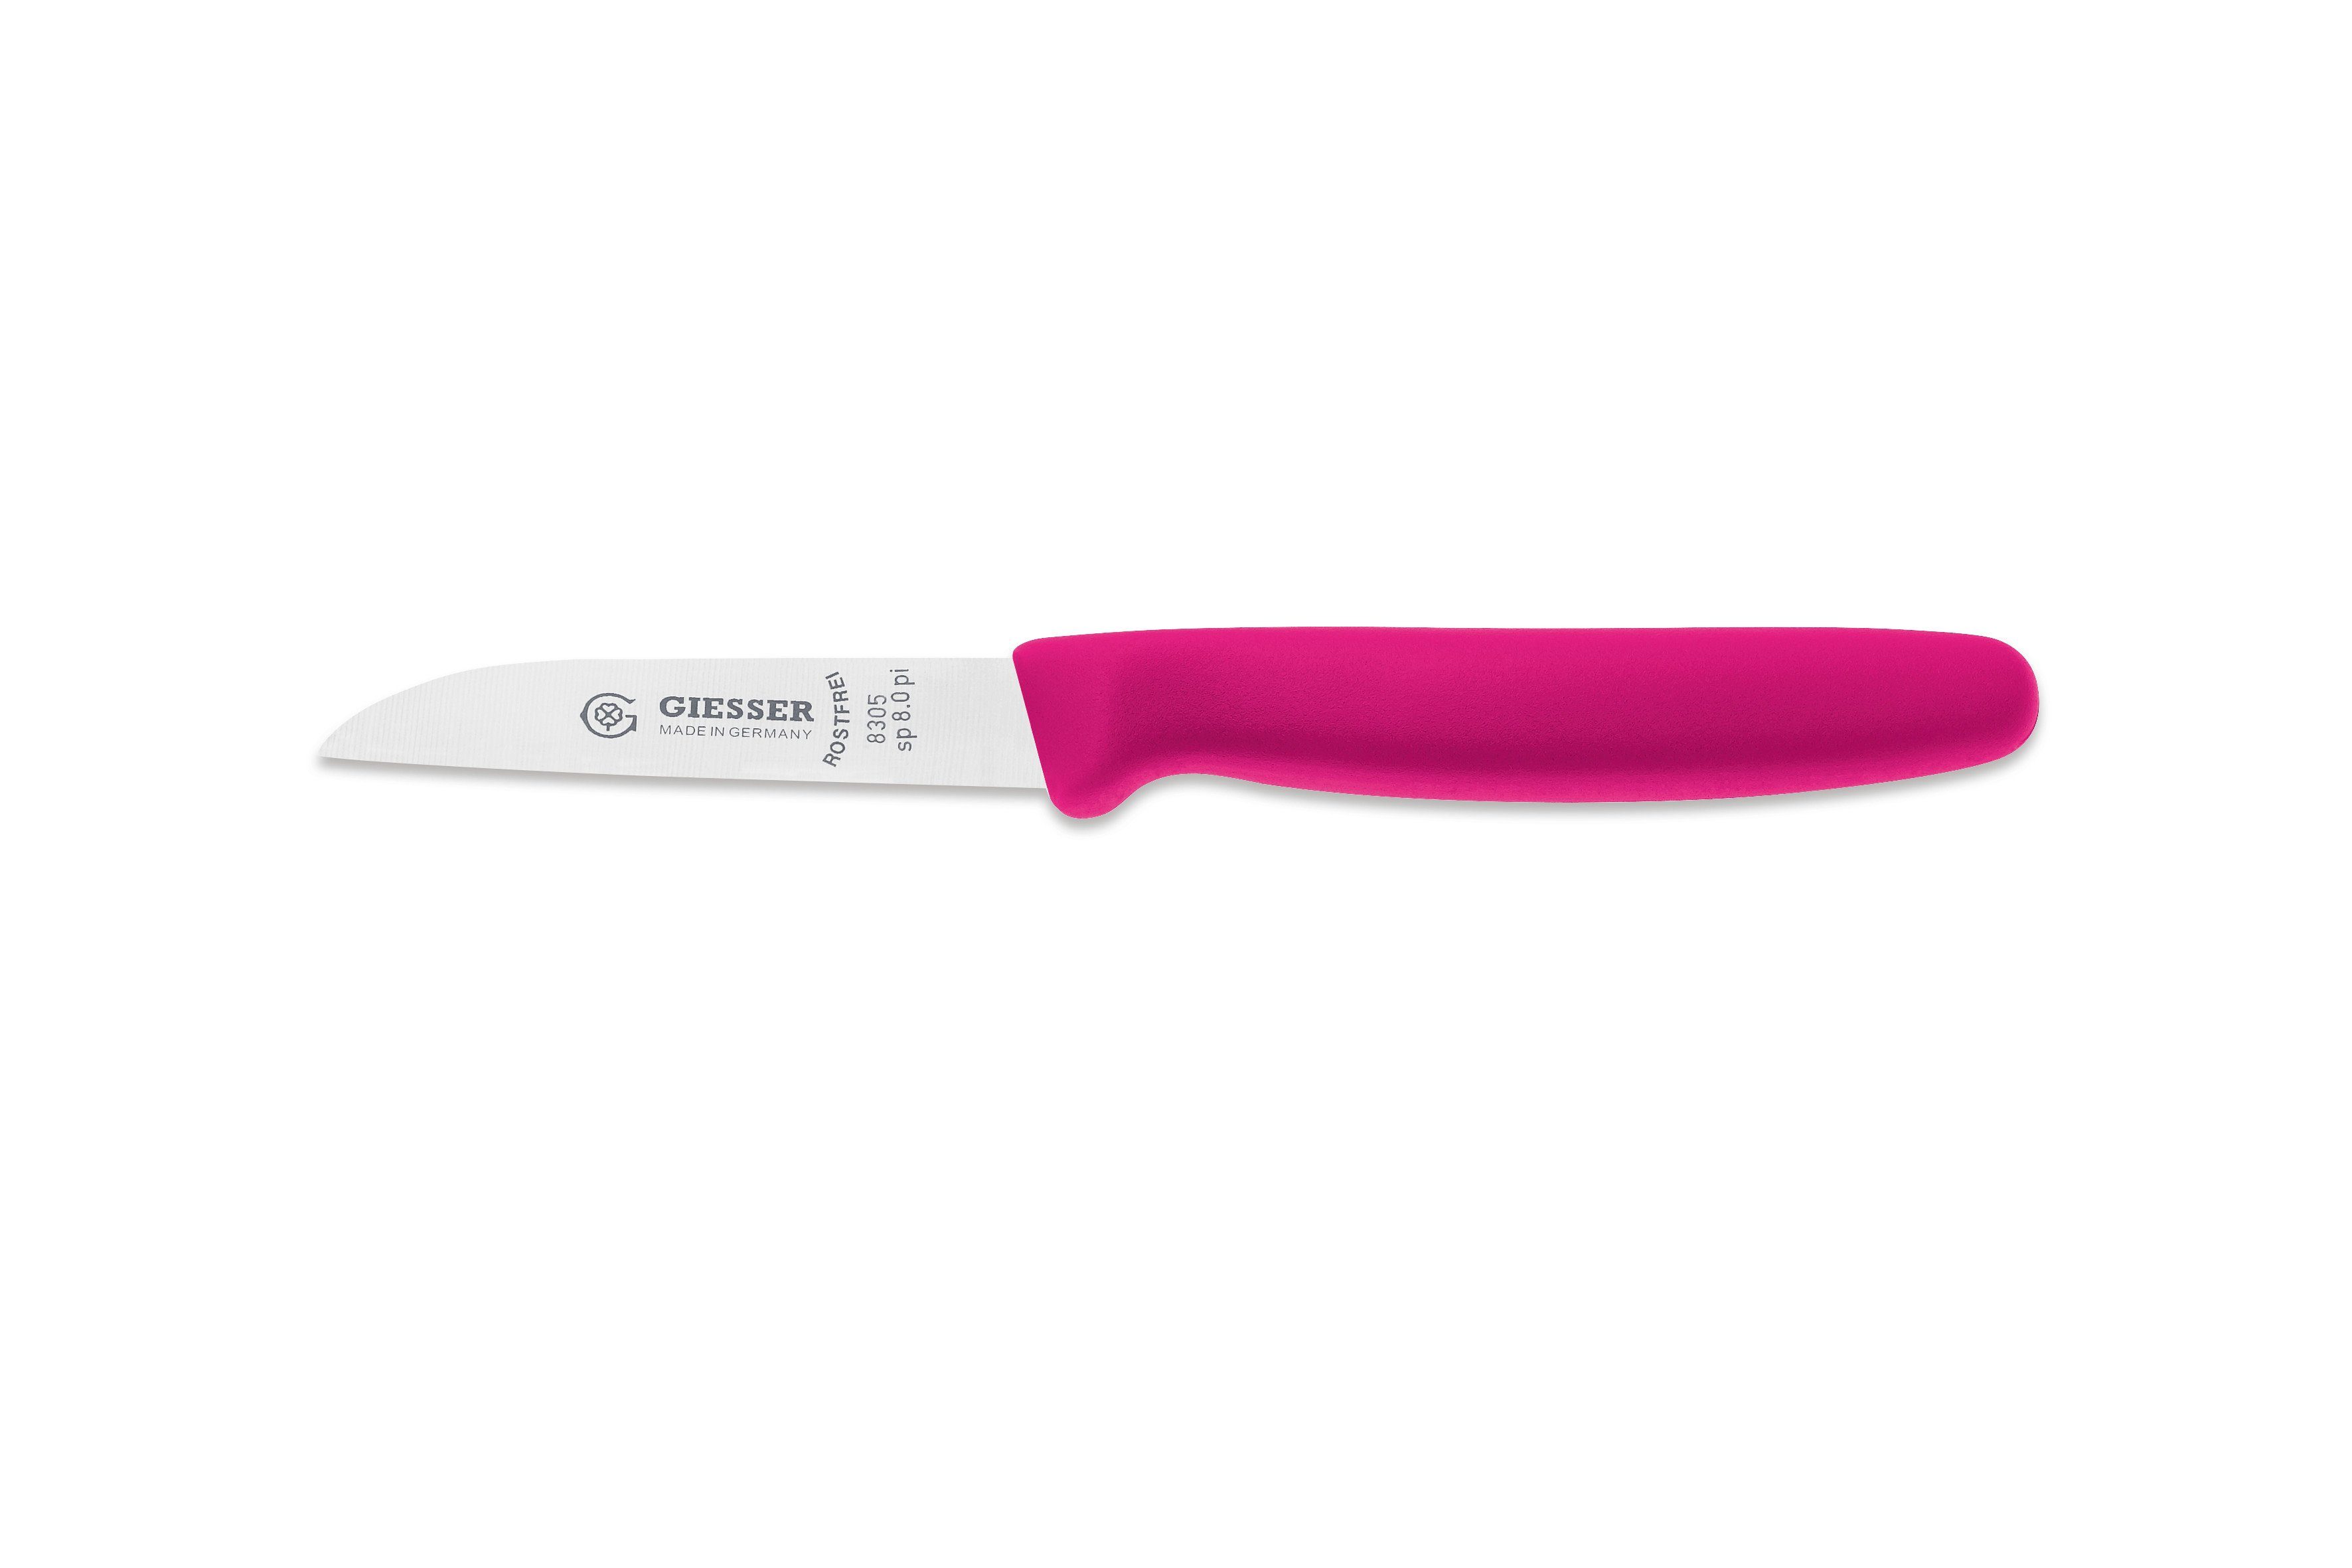 Giesser Messer Gemüsemesser Küchenmesser 8305 sp 8 alle Farben, Küchenmesser gerade Schneide 8 cm, Made in Germany Pink